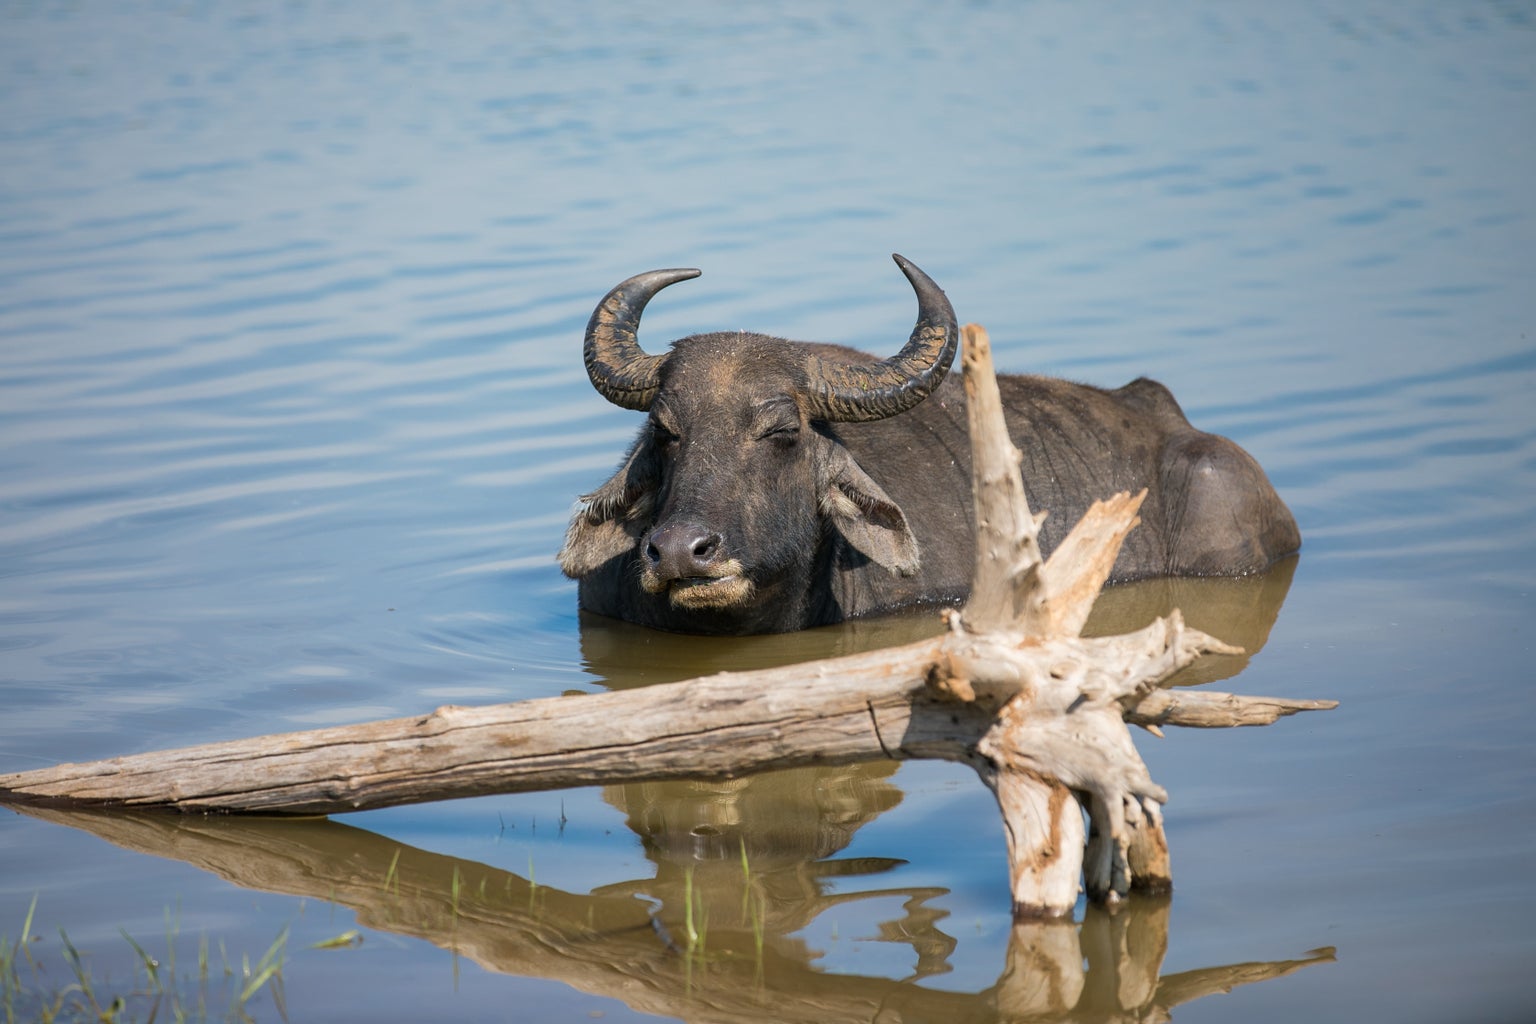 Water buffalo swimming, Sri Lanka.